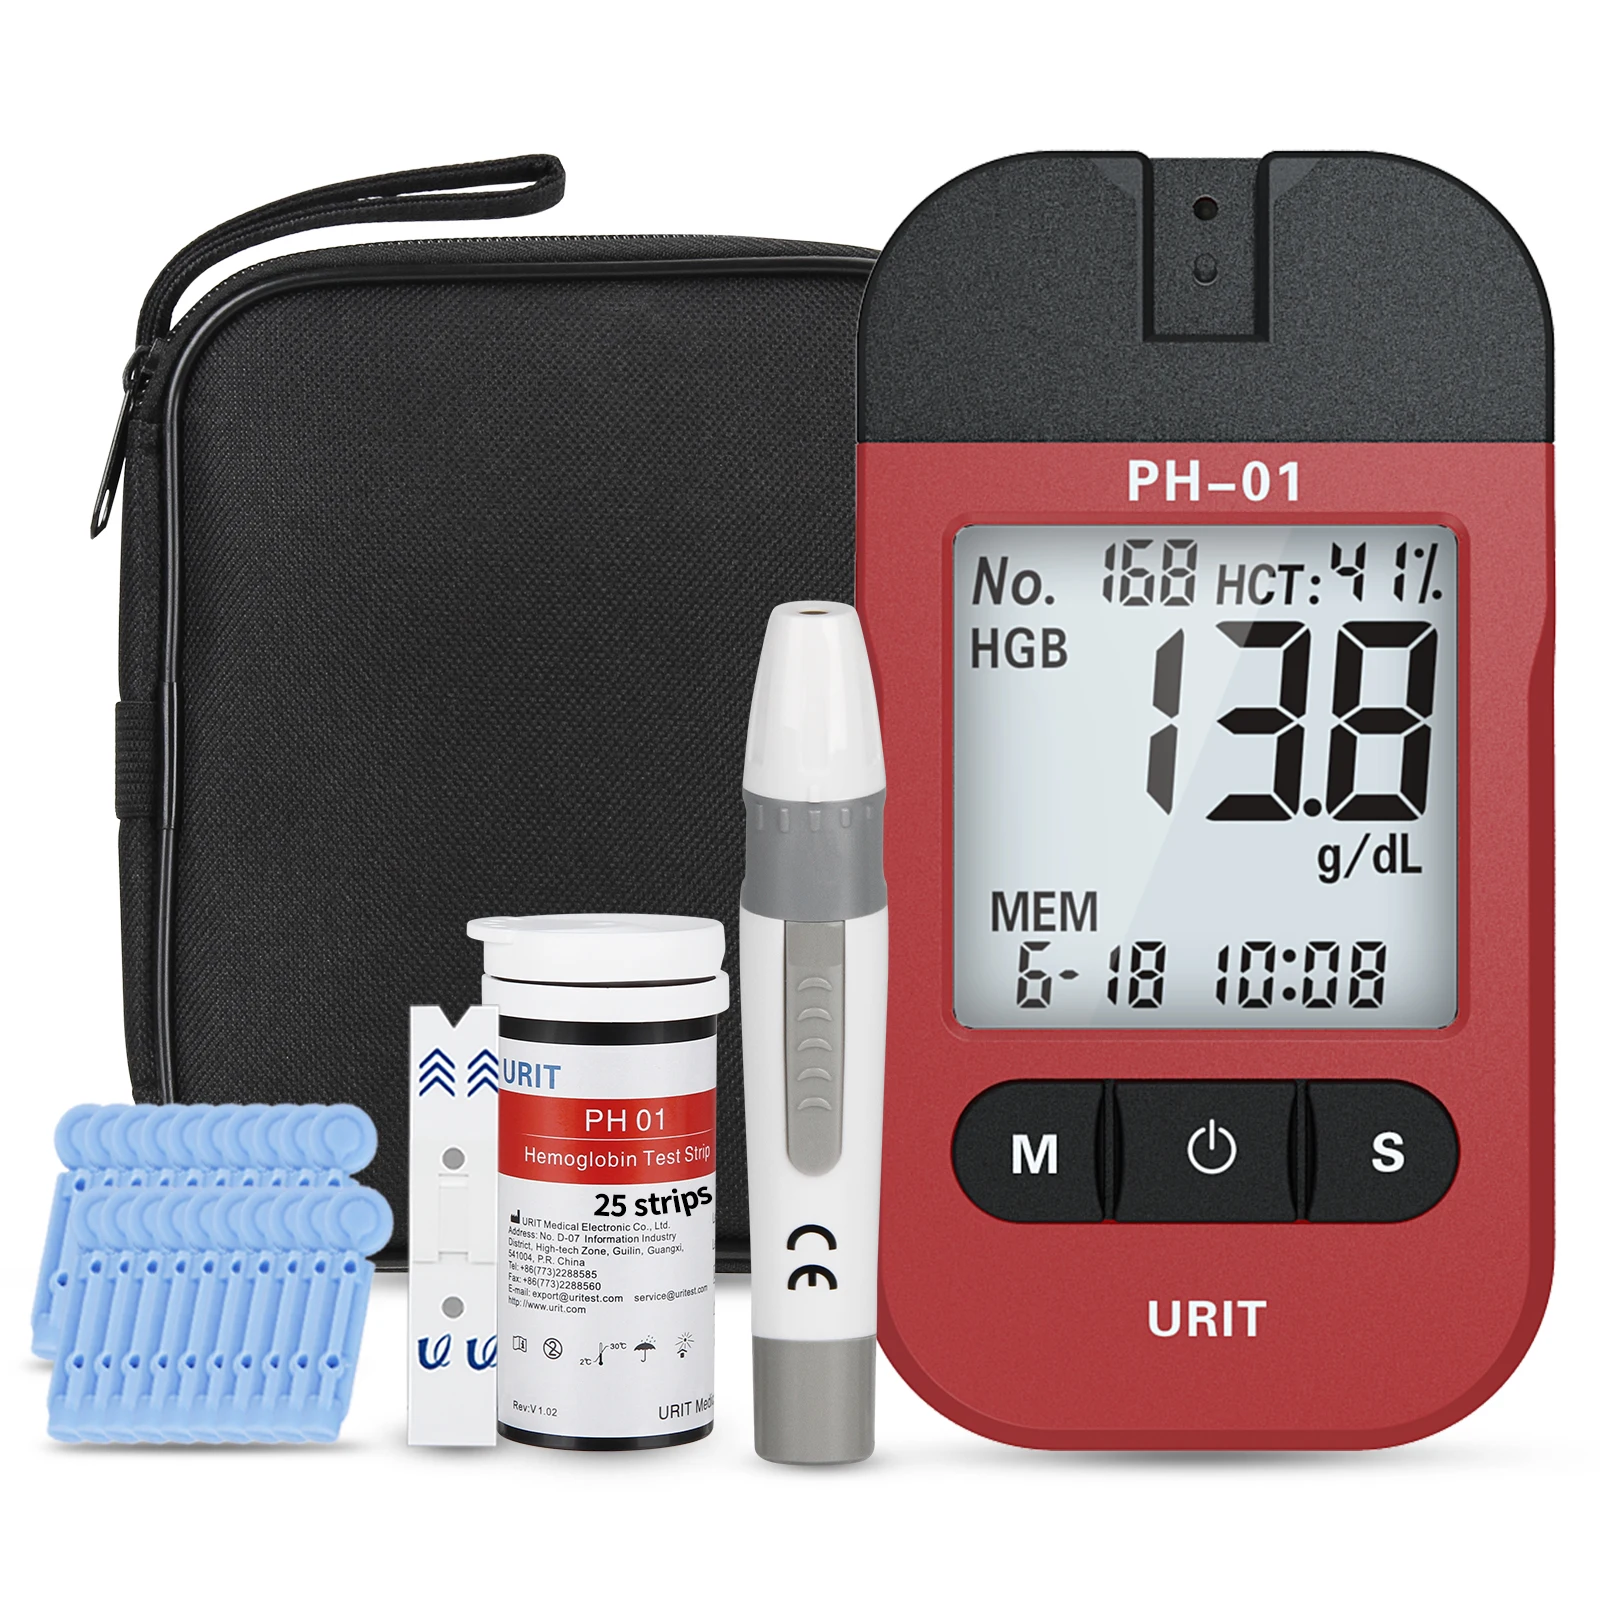 Hemoglobin Test Kit with 25 Test Strips, Hemoglobin Home Test Meter Analyzer